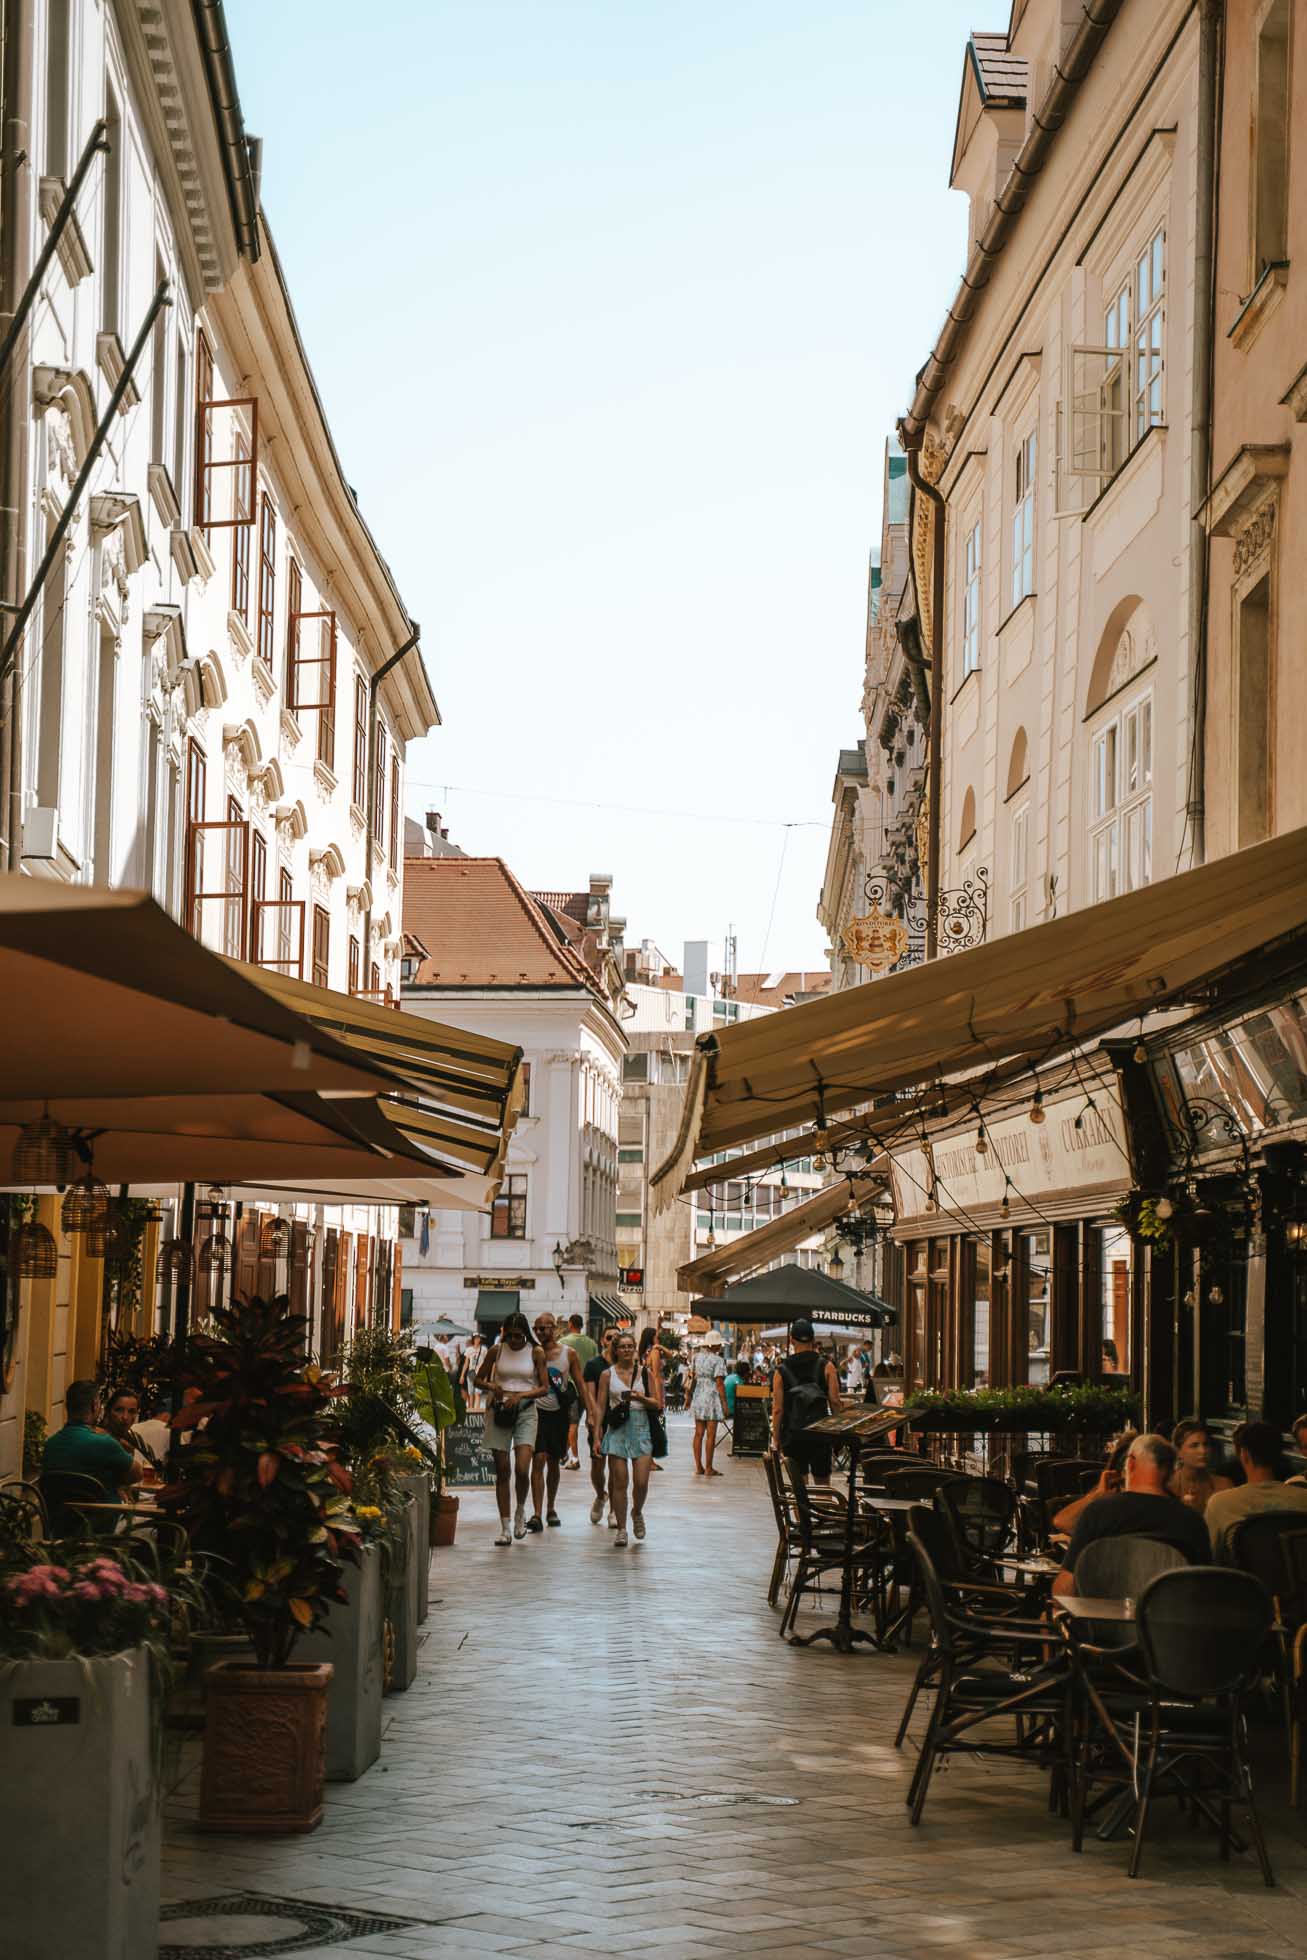 Old Town, nuestro lugar favorito de Bratislava en 1 día